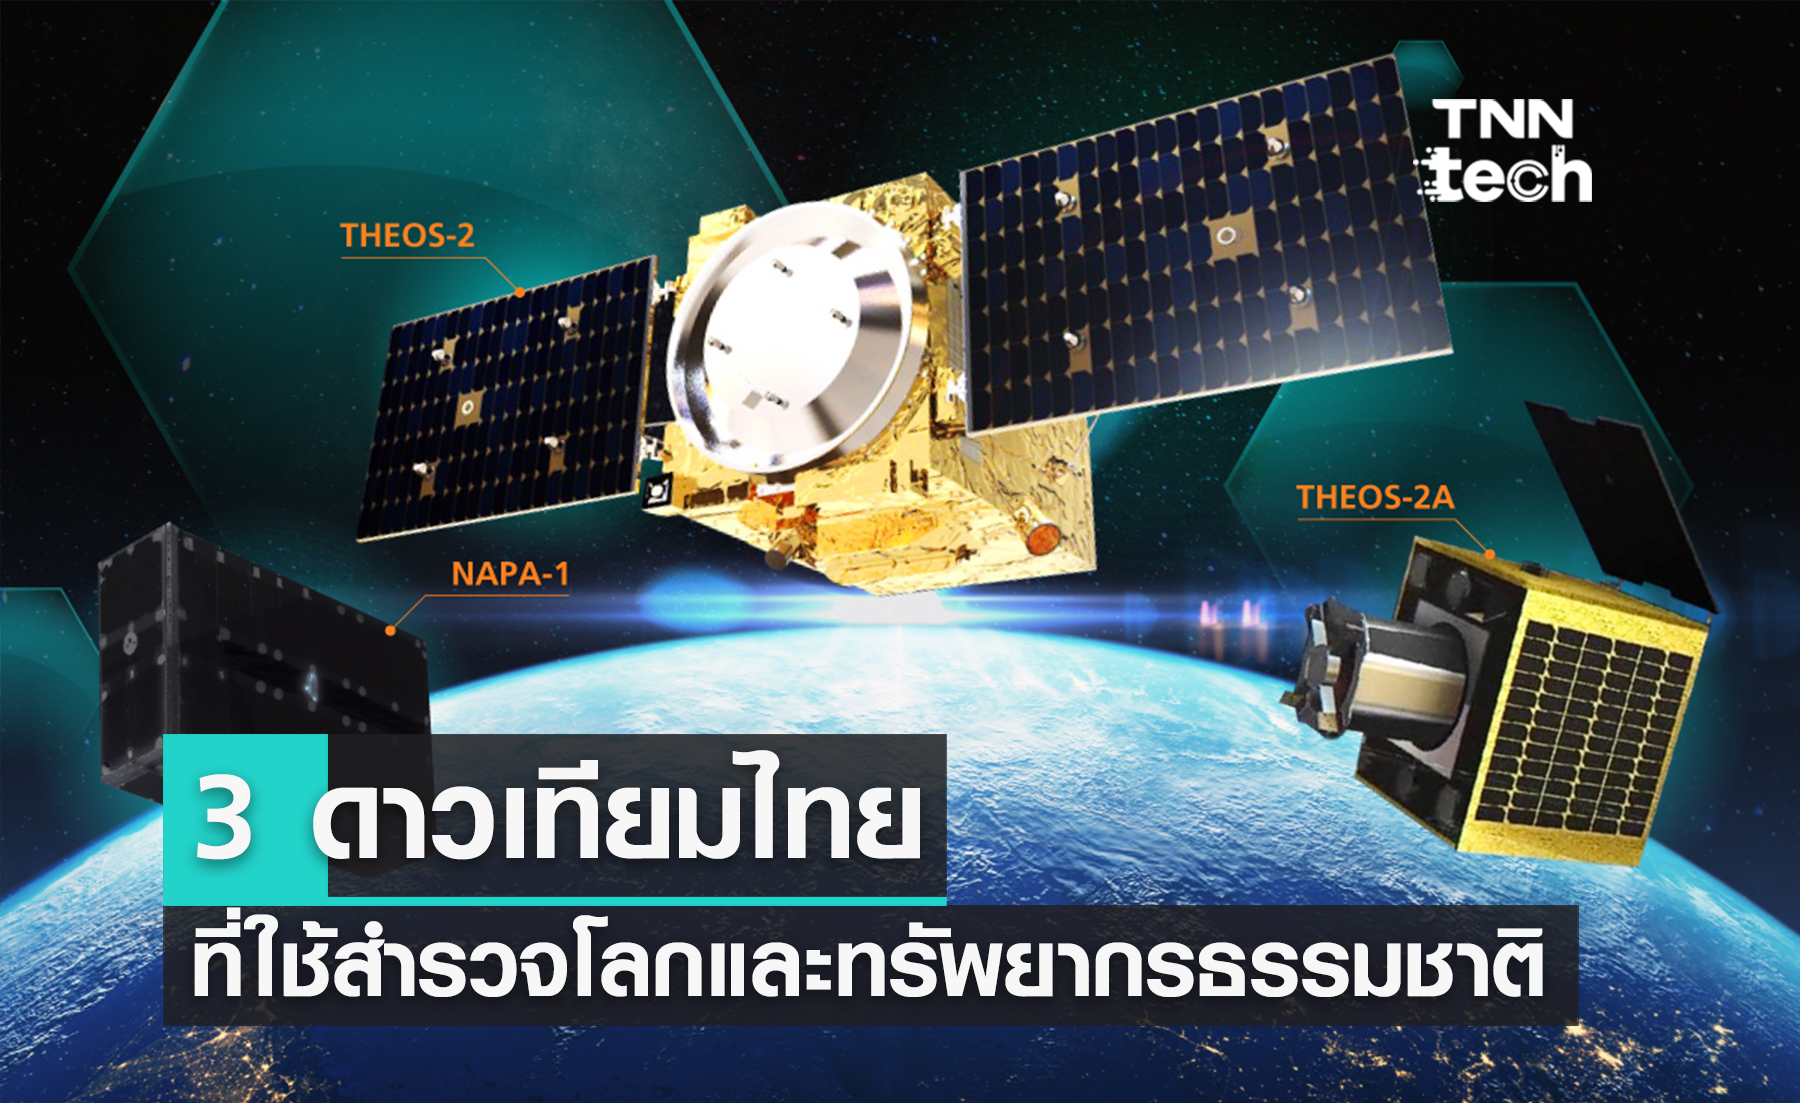 สรุป 3 “ดาวเทียมไทย” ที่ใช้สำรวจโลกและทรัพยากรของธรรมชาติ: "THEOS" "THEOS-2" "NAPA-1"